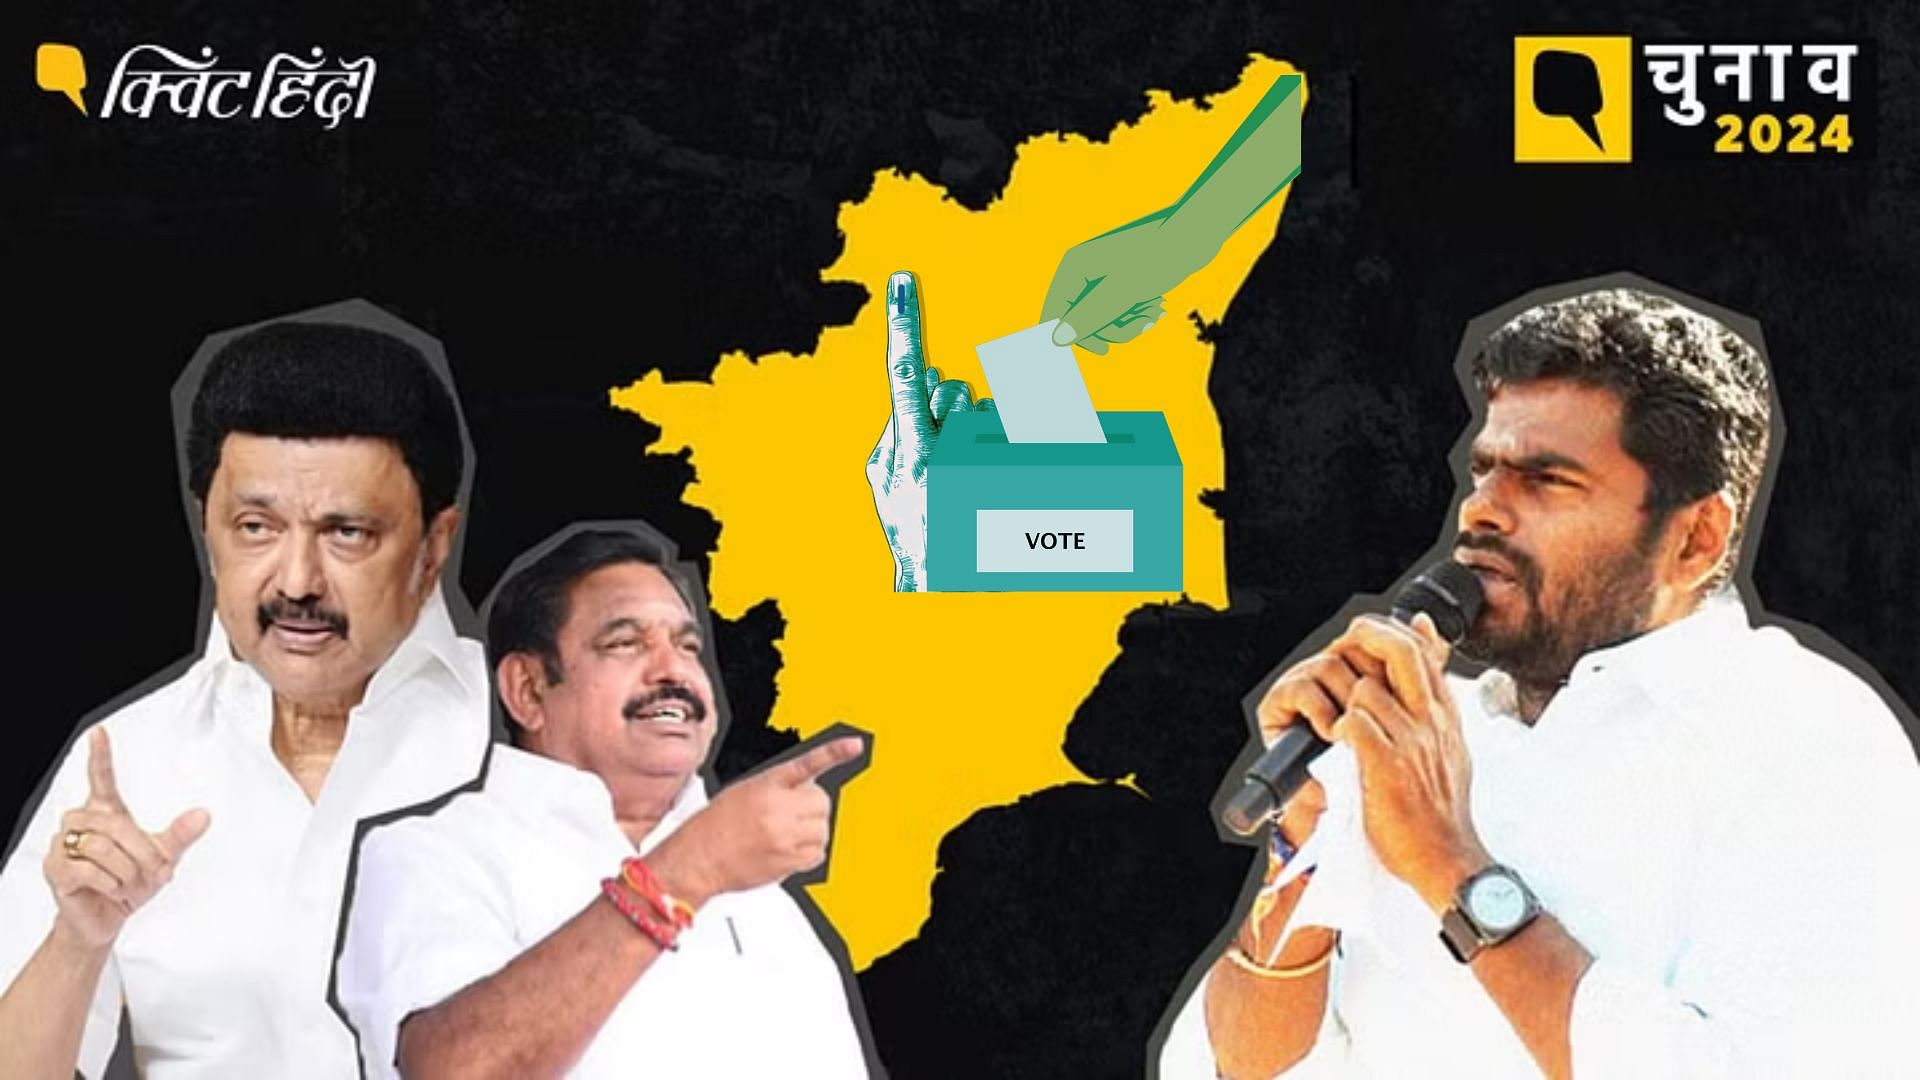 <div class="paragraphs"><p>Tamil Nadu: 72.09% मतदान, हिंसा, EVM में खराबी, चुनाव का बहिष्कार- BJP के लिए चुनौती?</p></div>